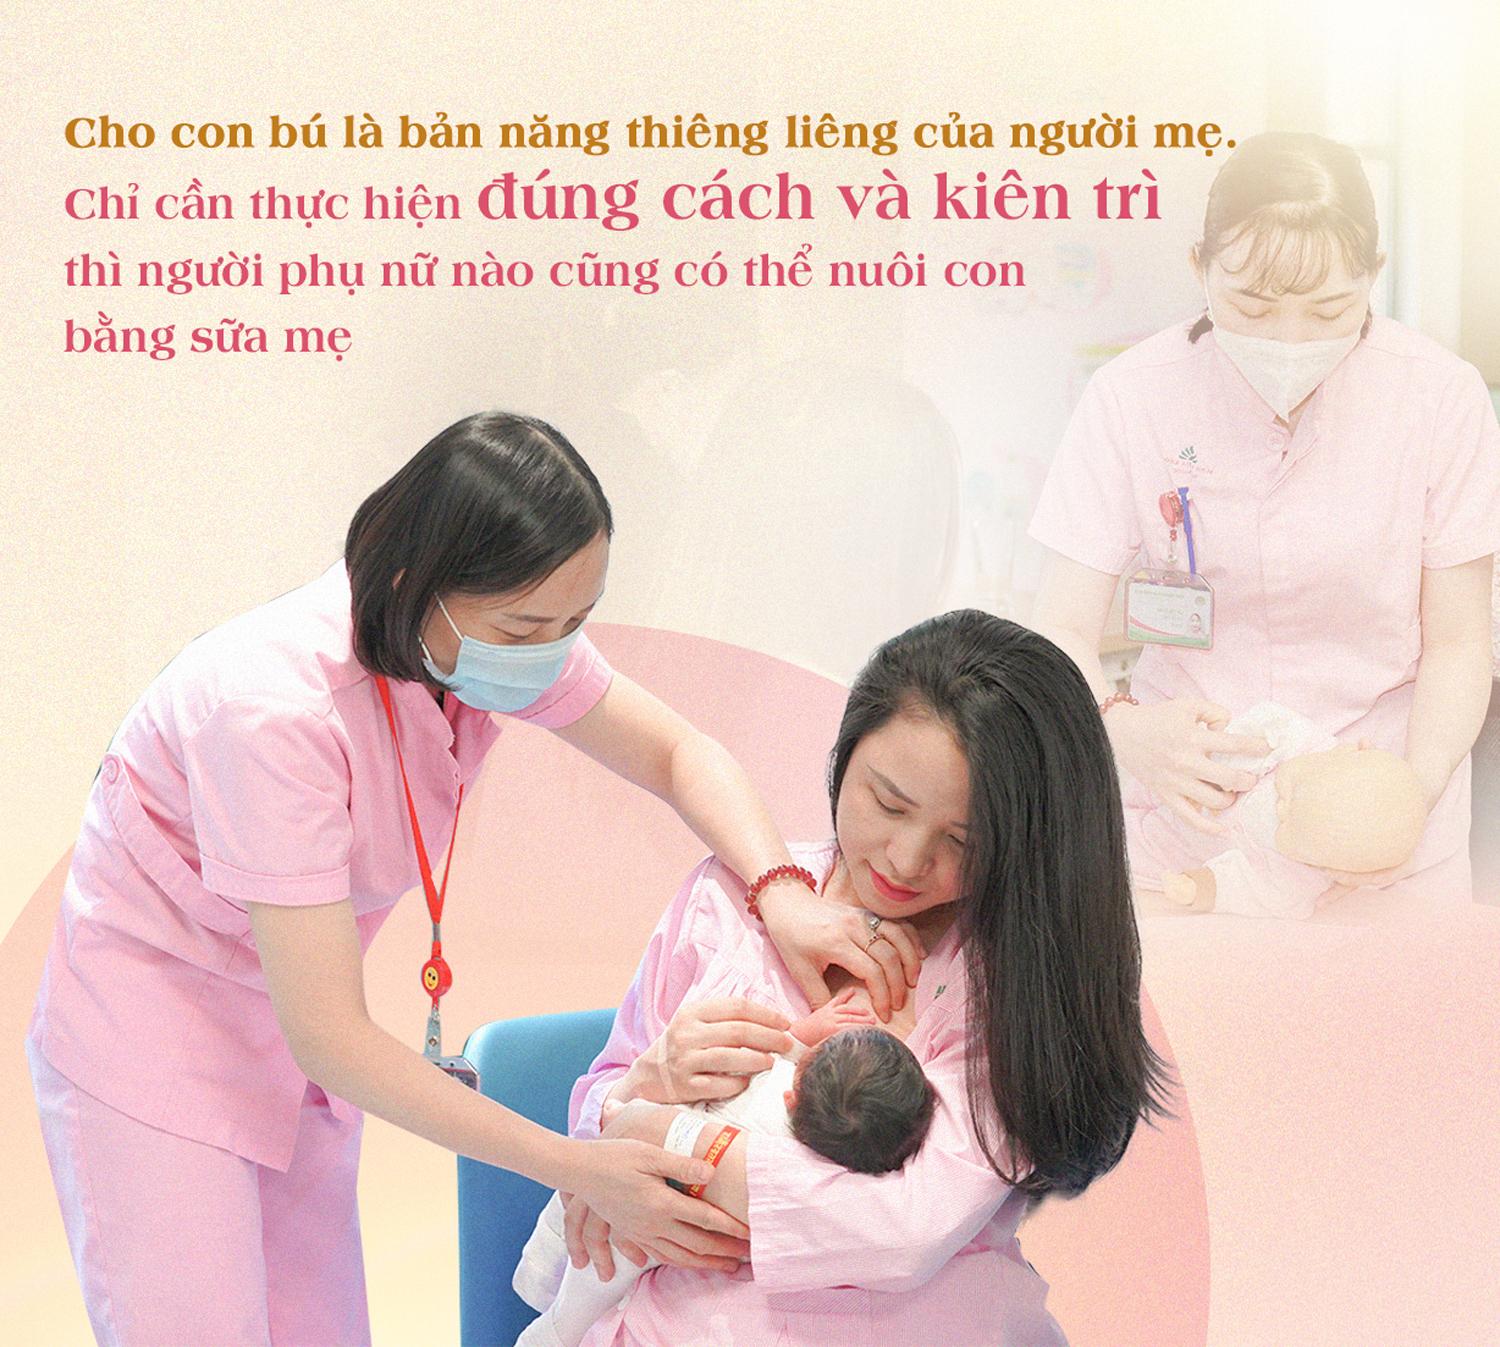 พยาบาลจากแผนกสูติศาสตร์กับงานฮาๆ : ยังไม่คลอดลูก ยังมีนมให้ลูกกิน... - ภาพที่ 6